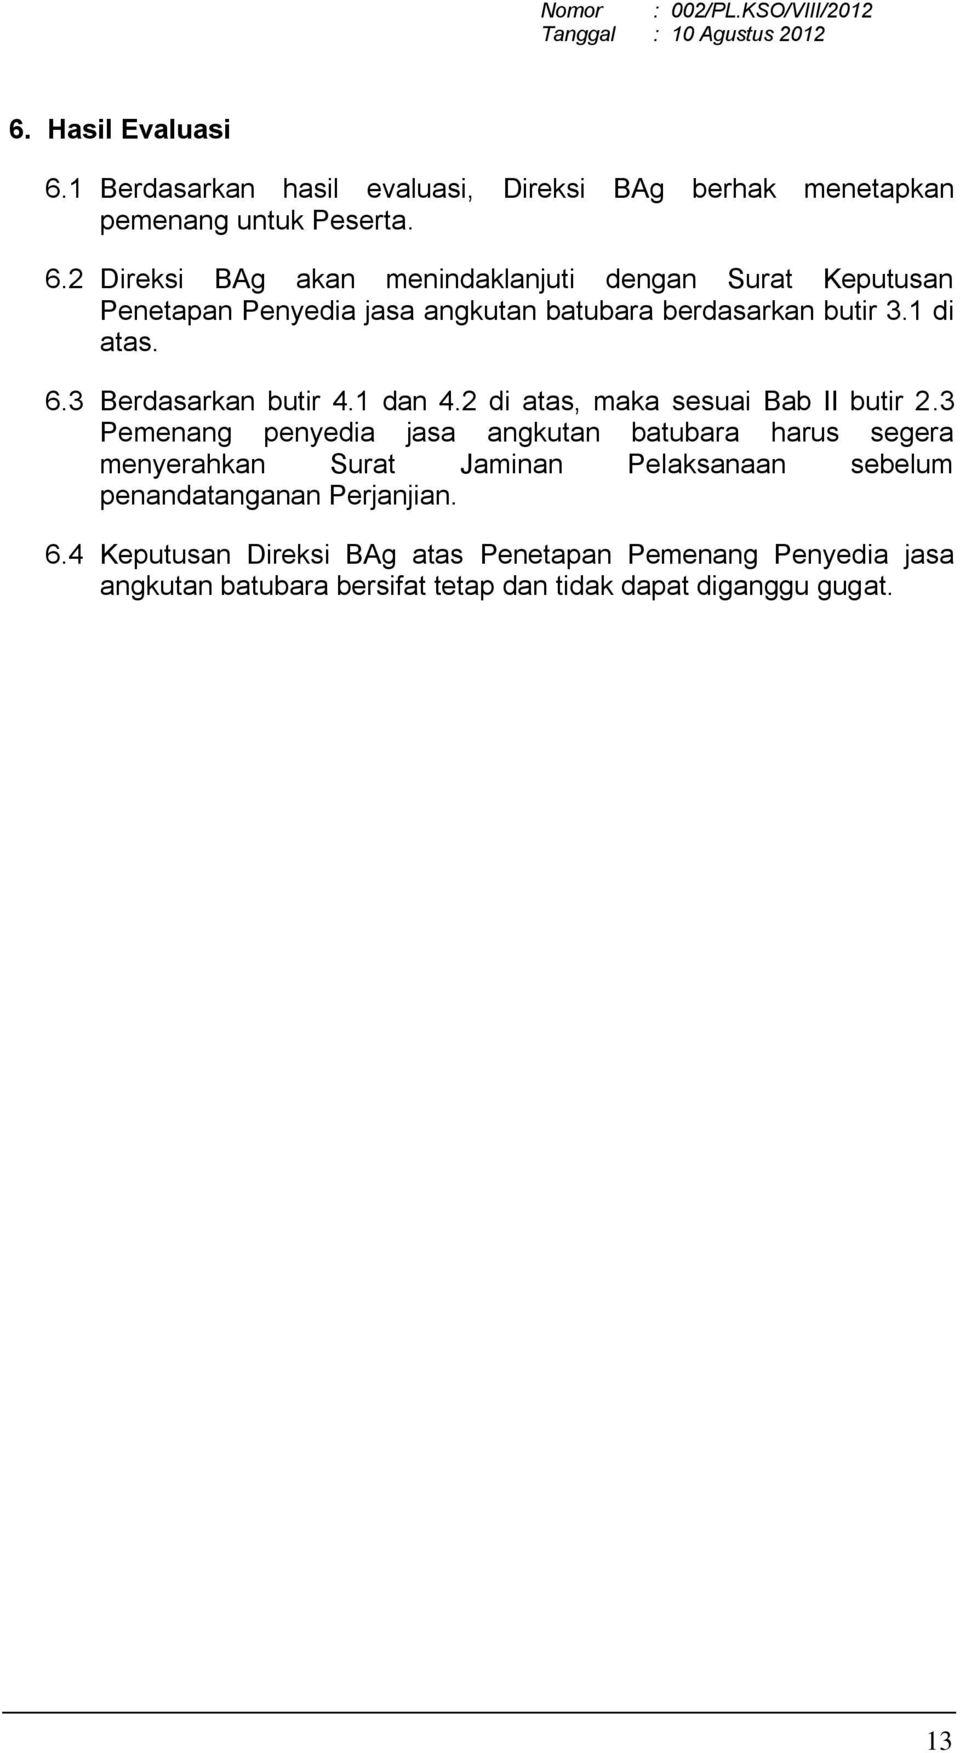 Detail Contoh Surat Perjanjian Kerjasama Jasa Angkutan Batubara Nomer 20